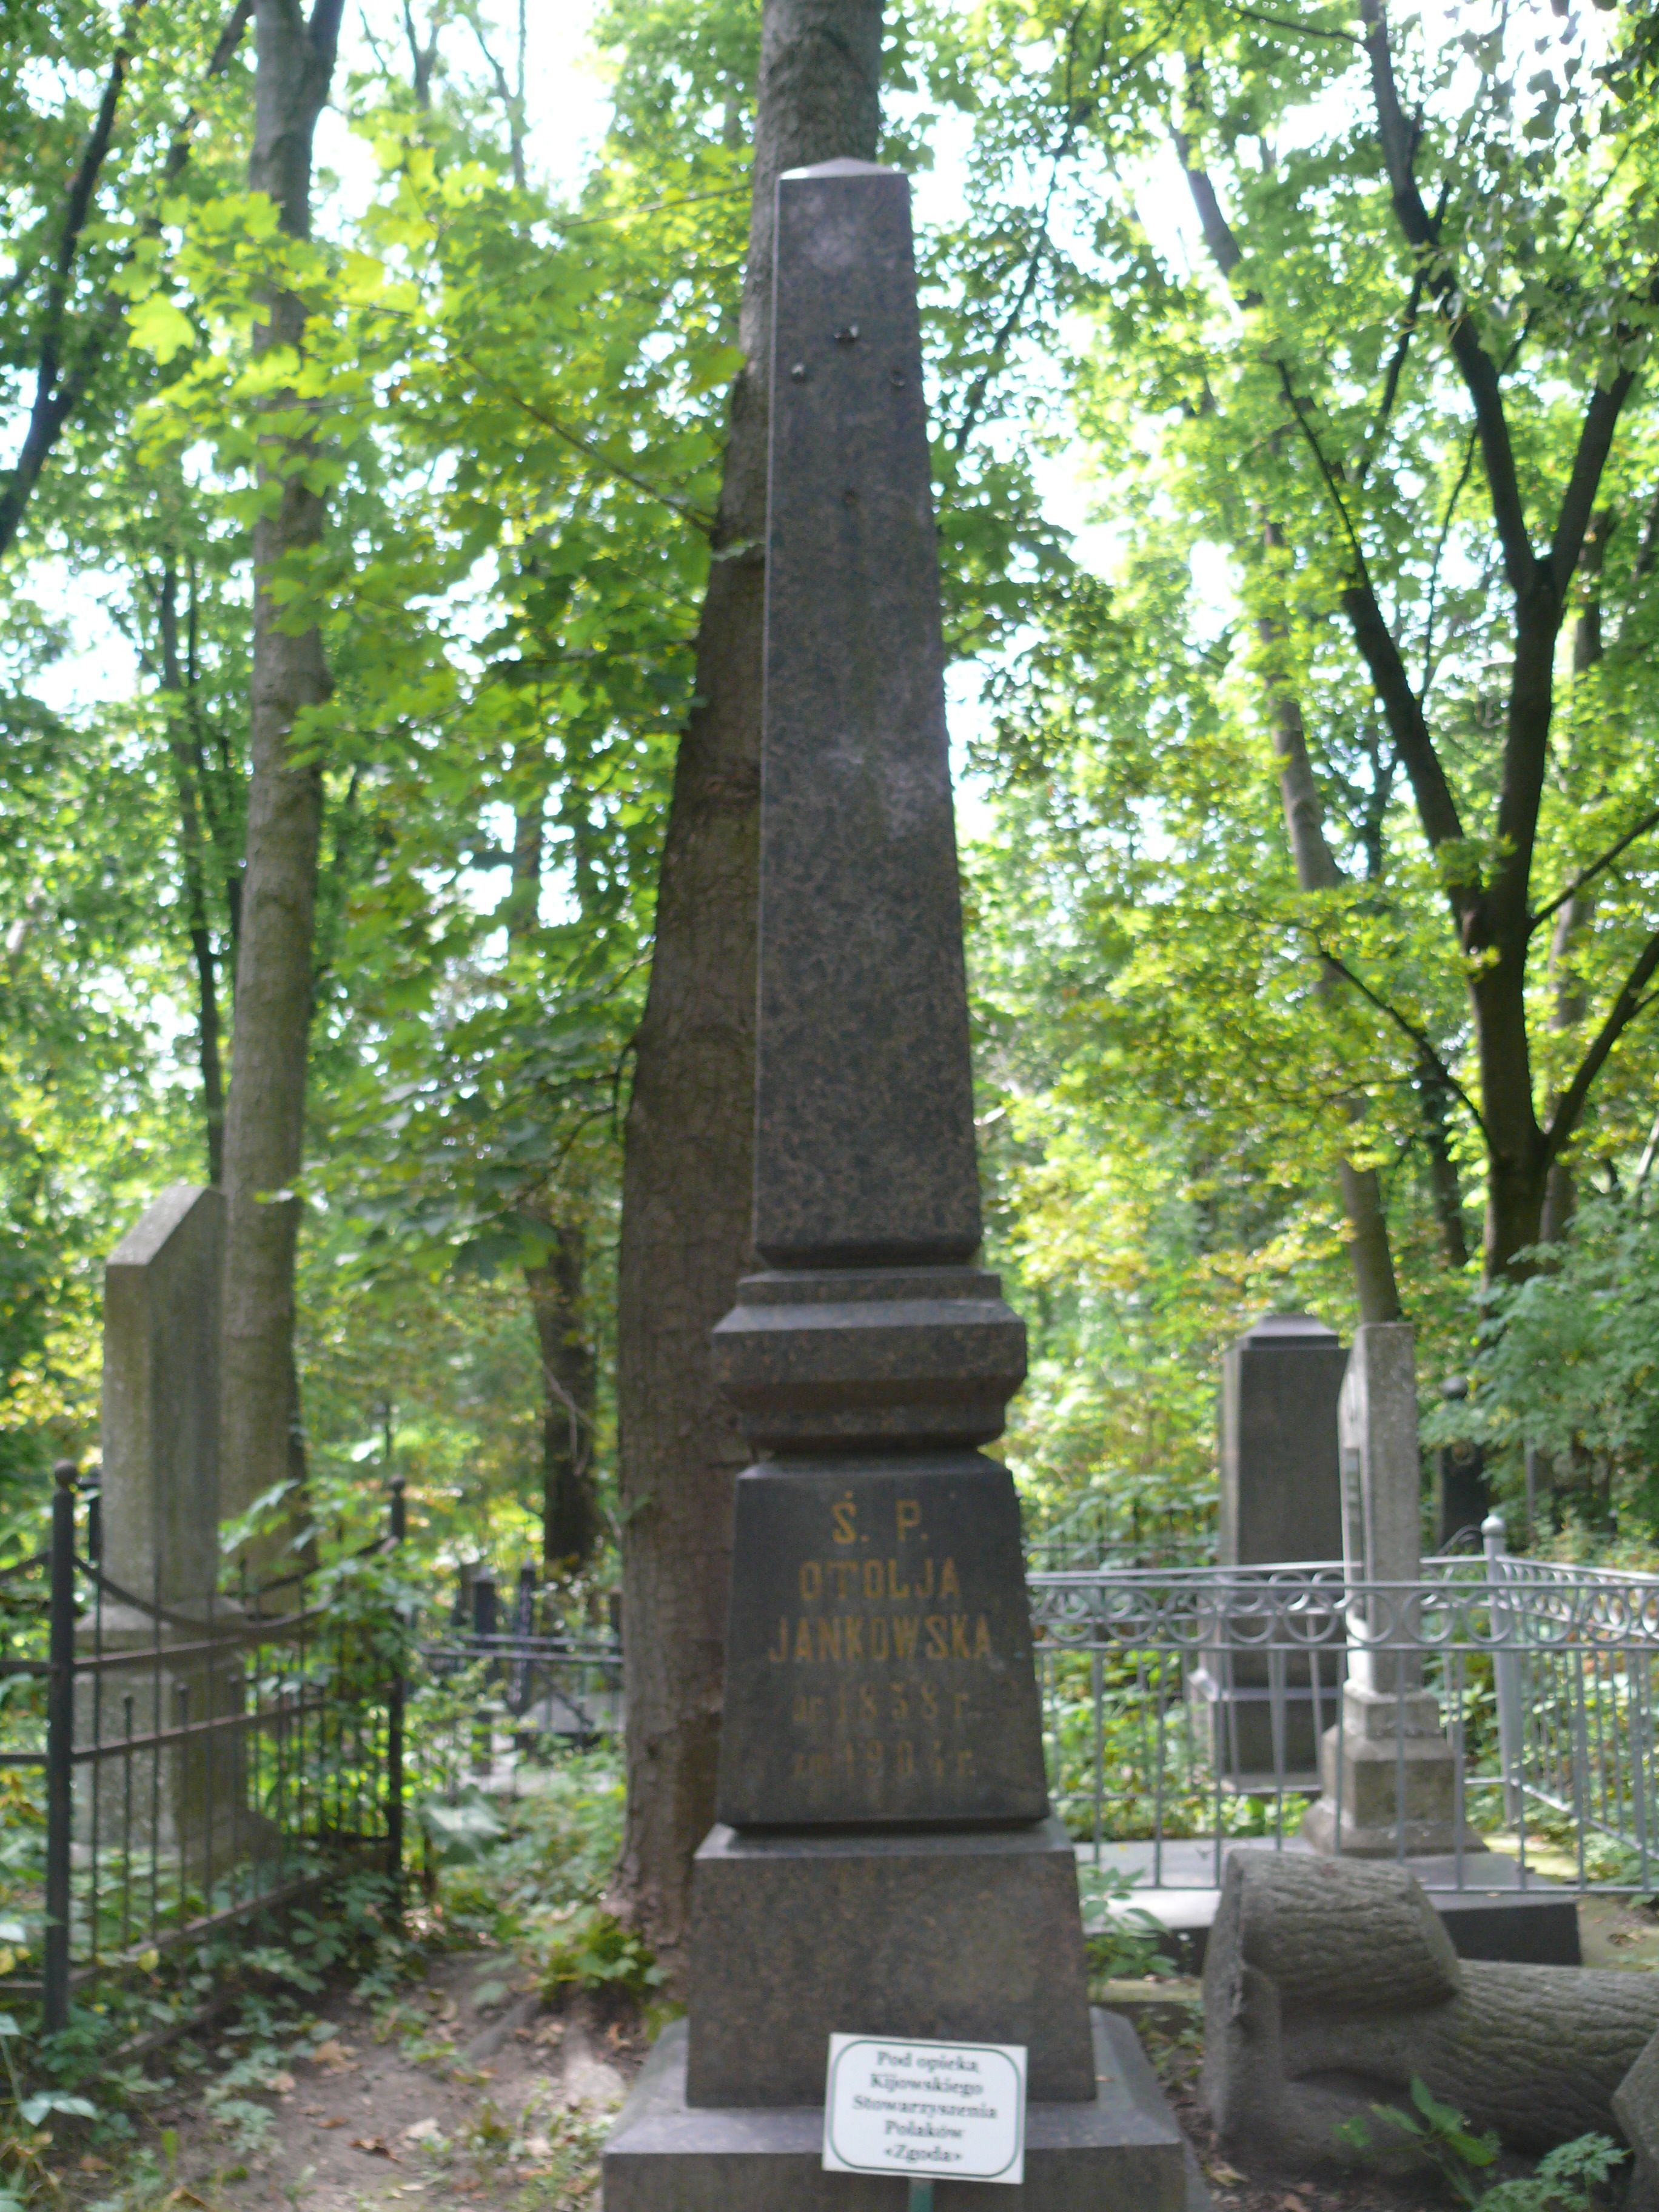 Tombstone of Otyla Jankowska